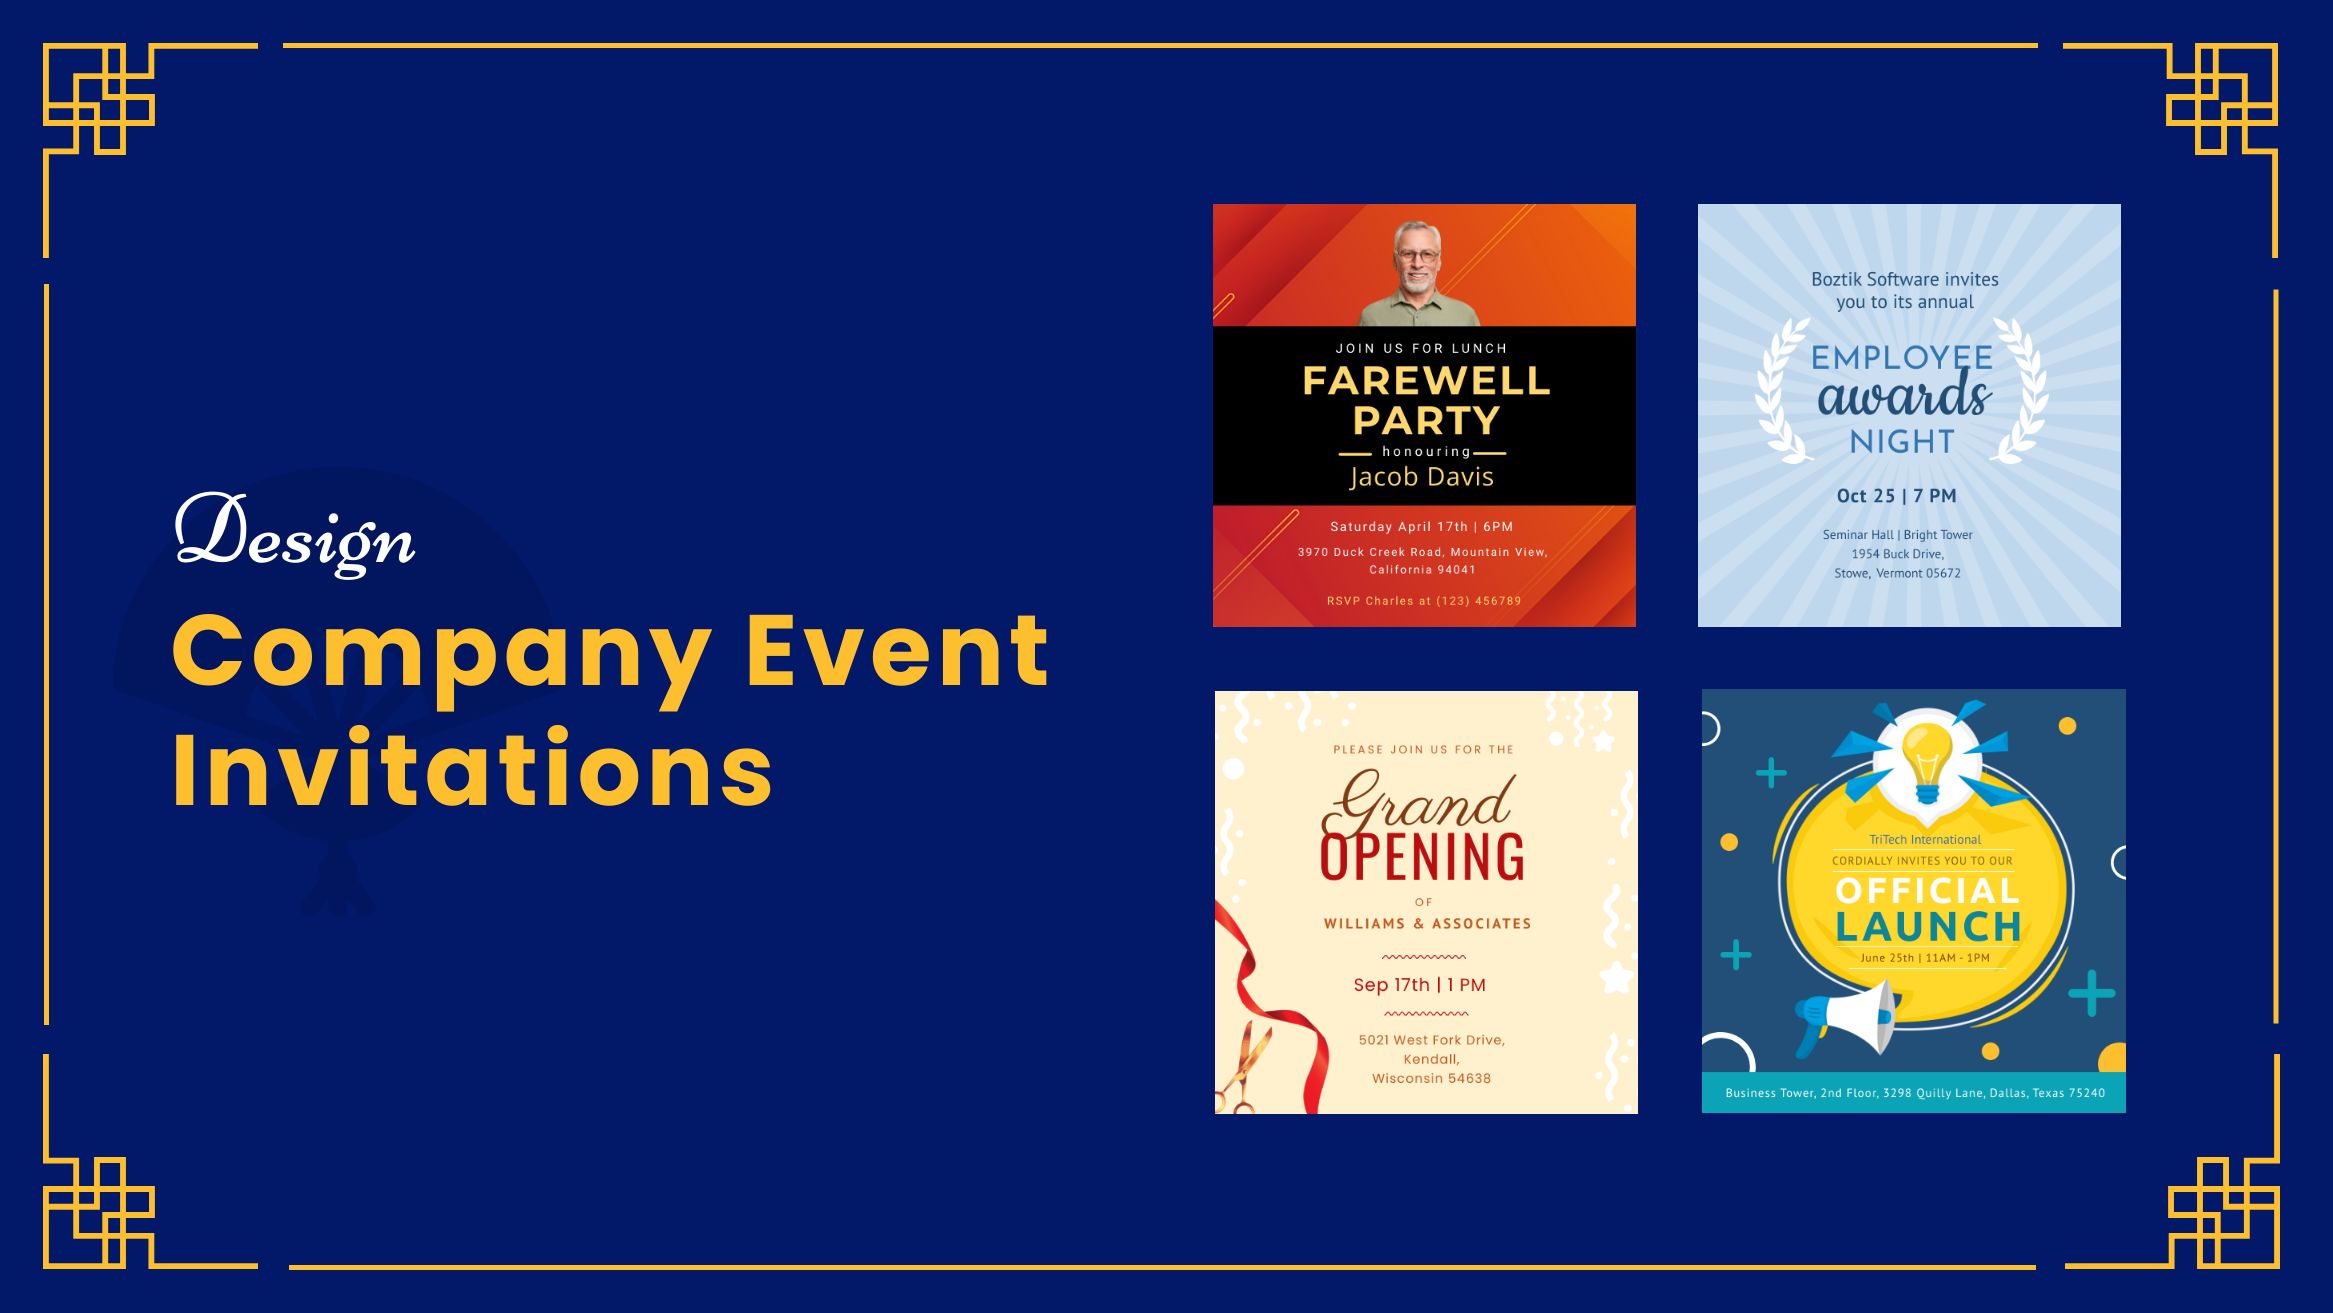 Design Company Event Invitation Blog Banner